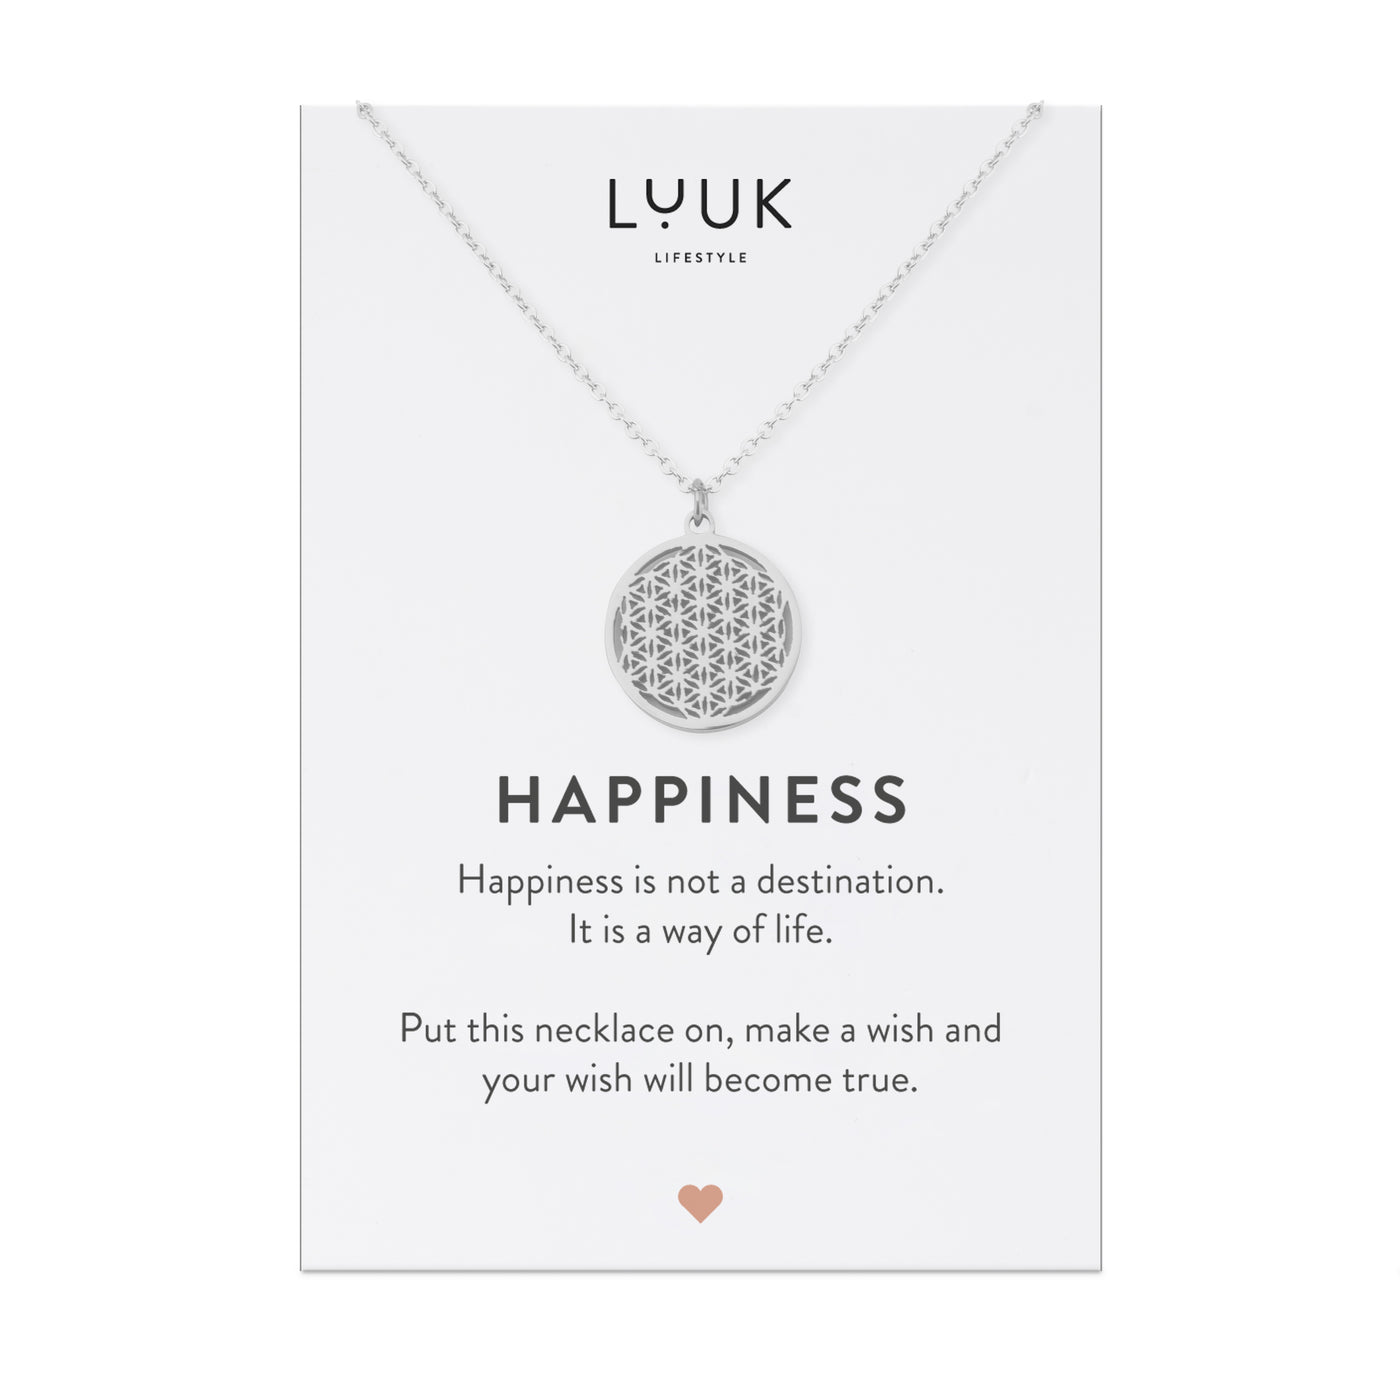 Silberne Halskette mit Blume des Lebens Anhänger auf Happiness Karte von der Marke Luuk Lifestyle.